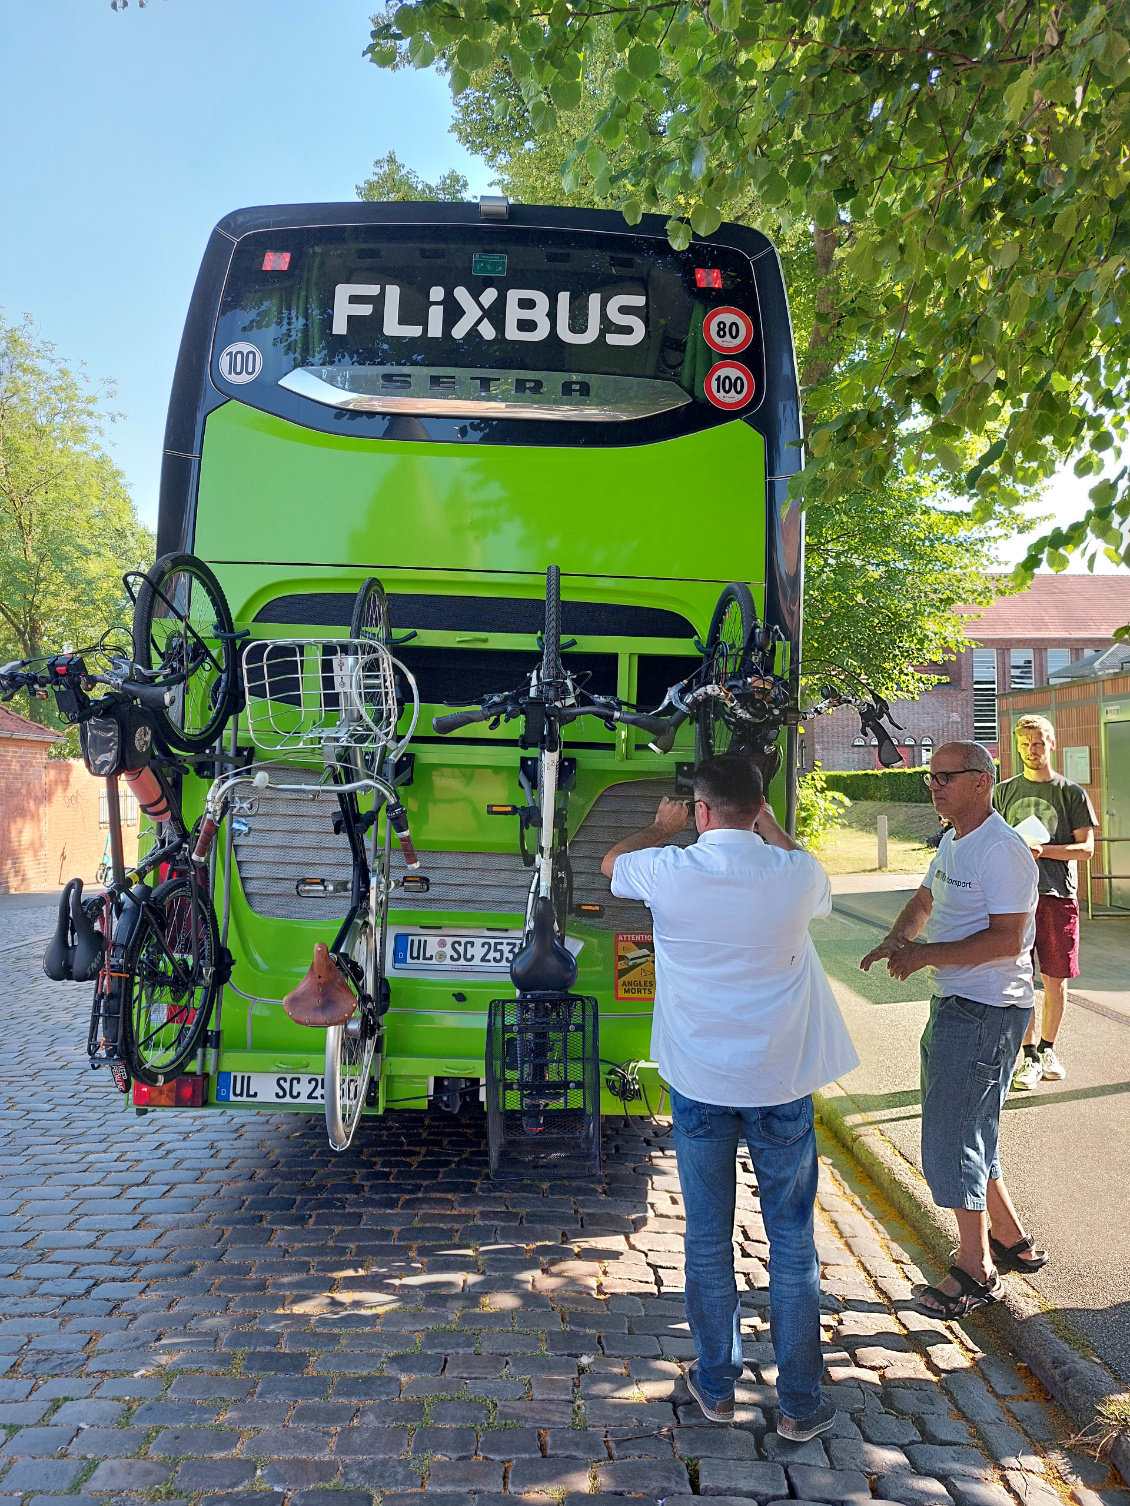 Flixbus en Allemagne.
Photo : Marie